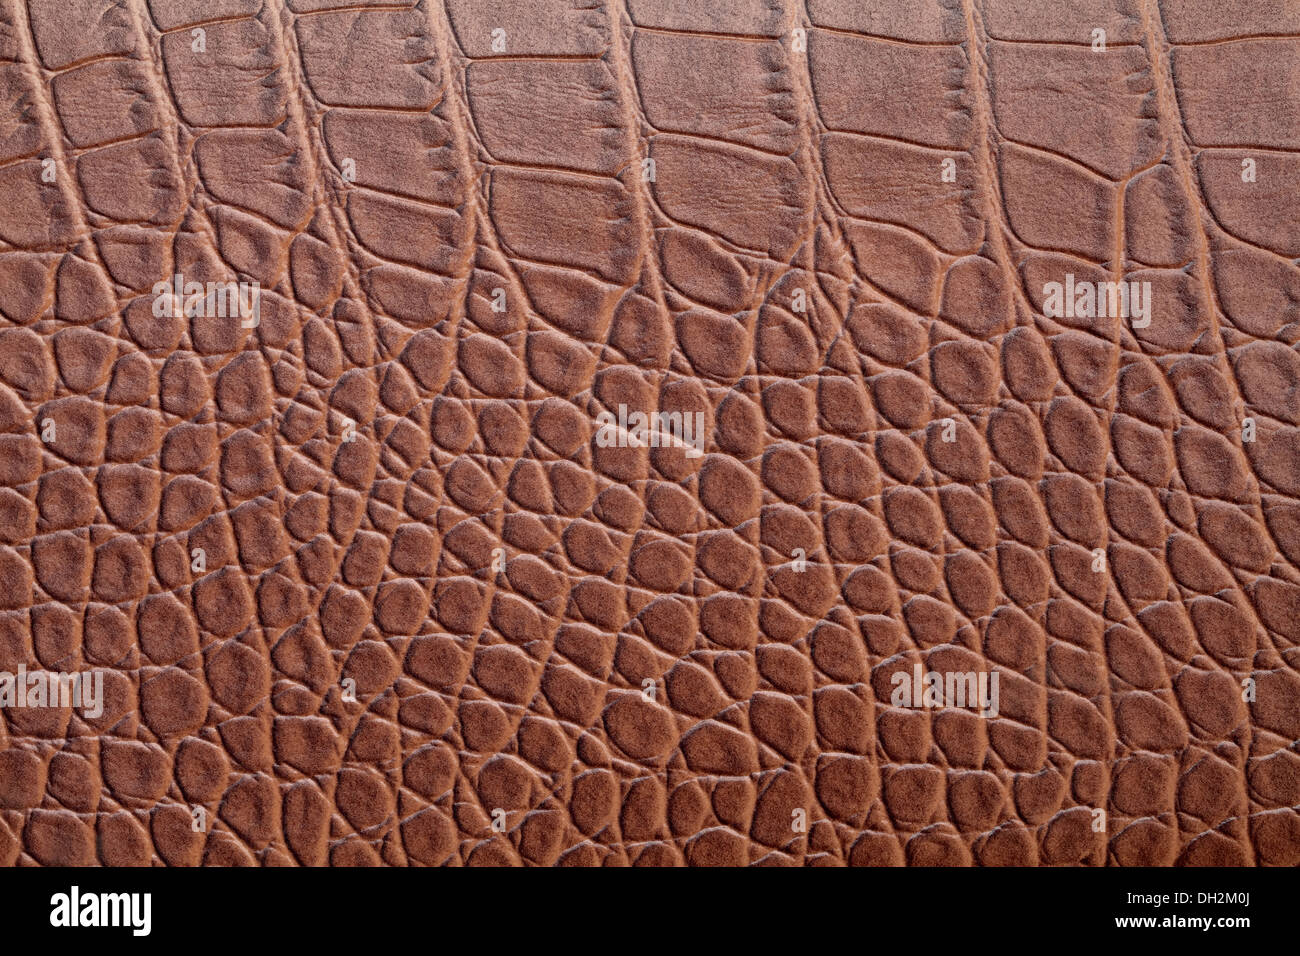 leather crocodile skin